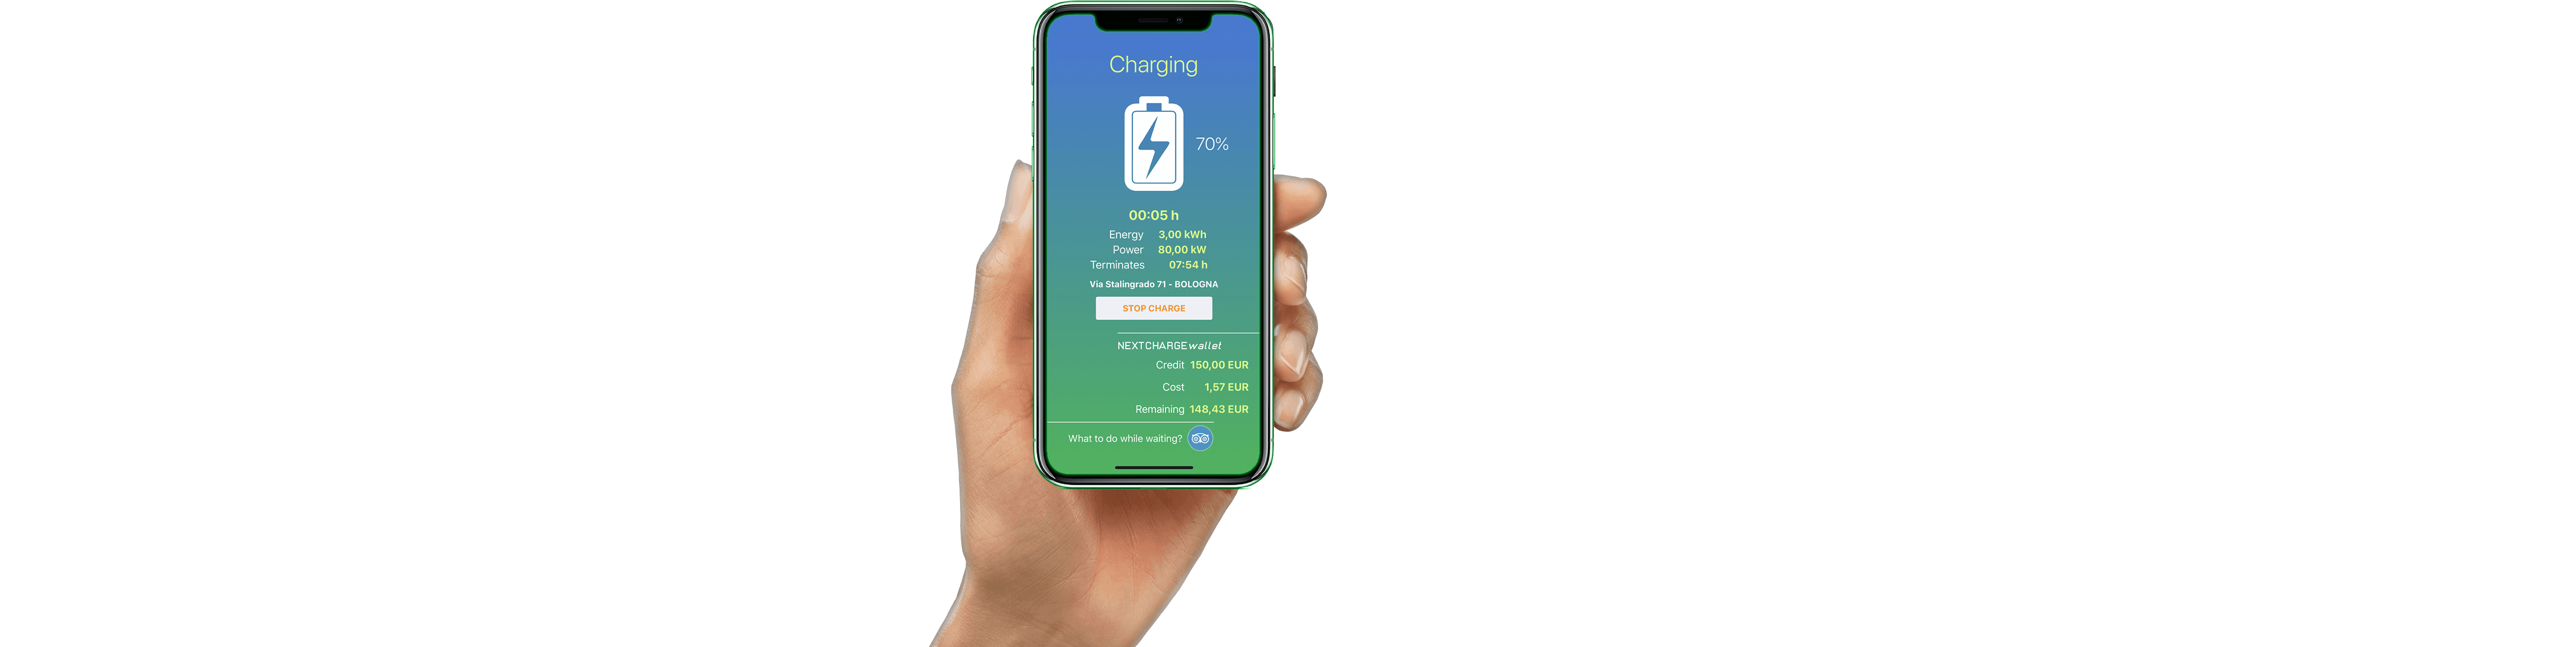 Smartphone Charging Status Display PNG